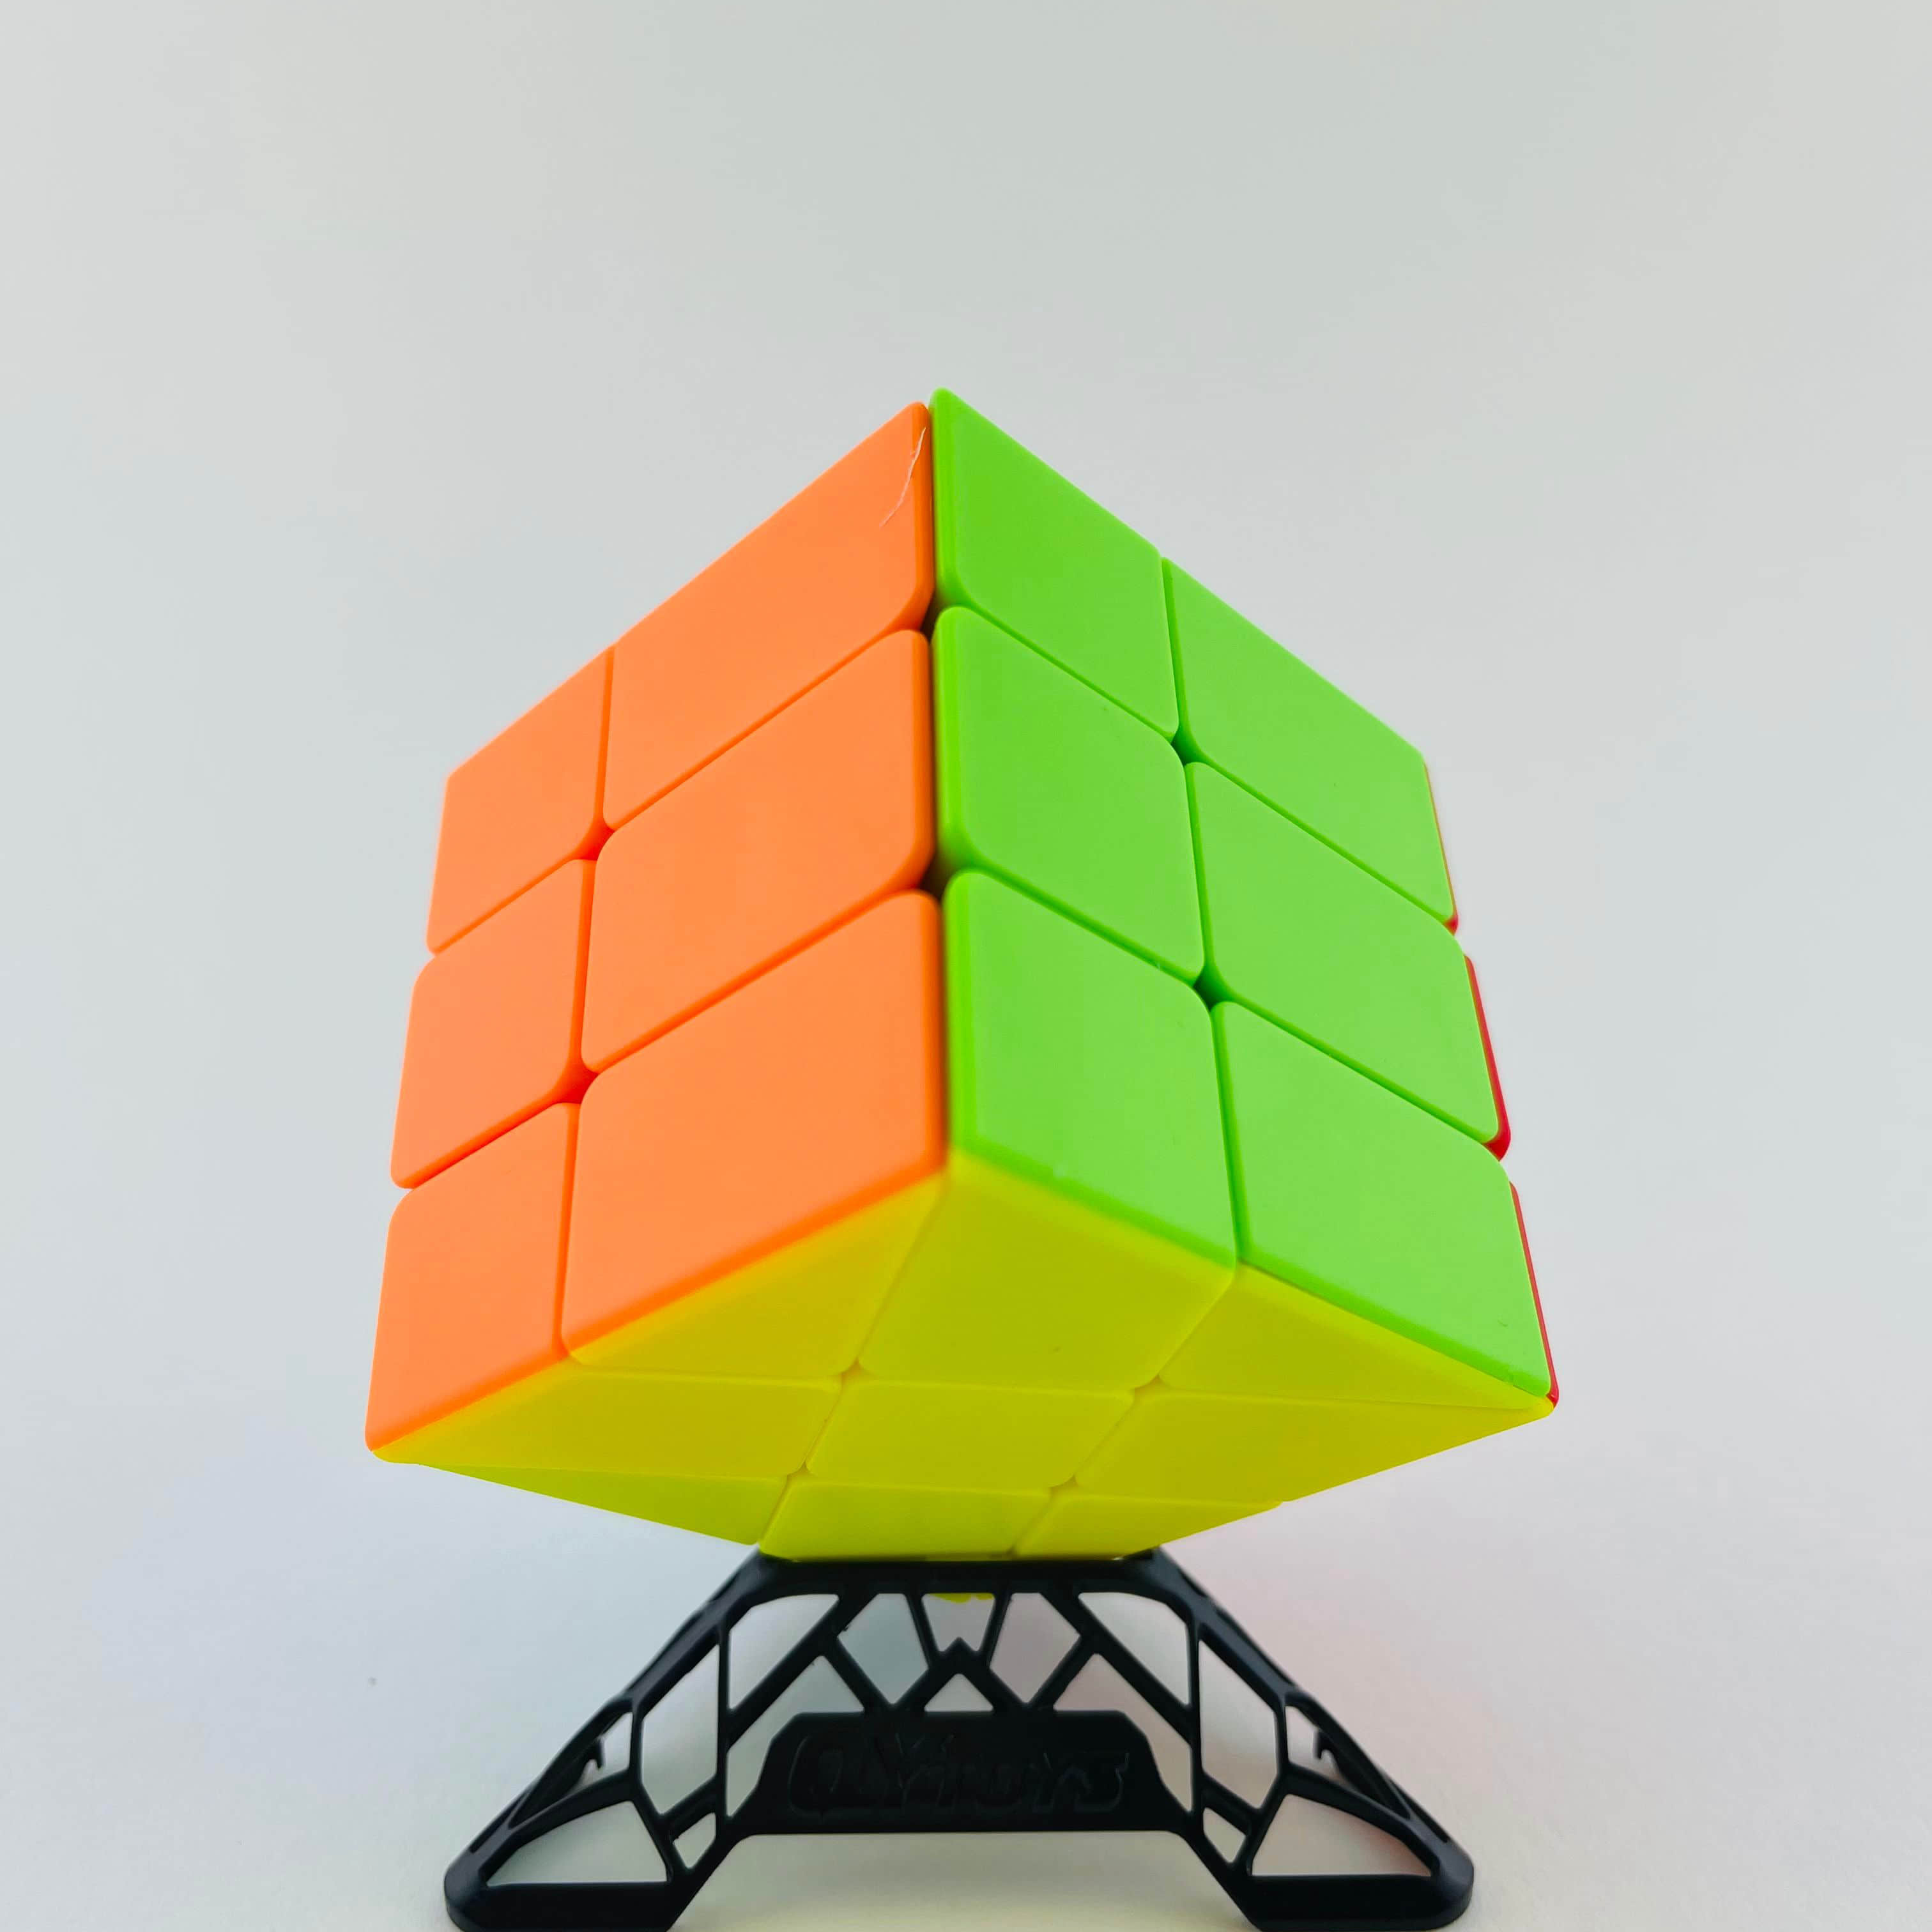 Qi Yi Hotwheel Rubik’s Cube